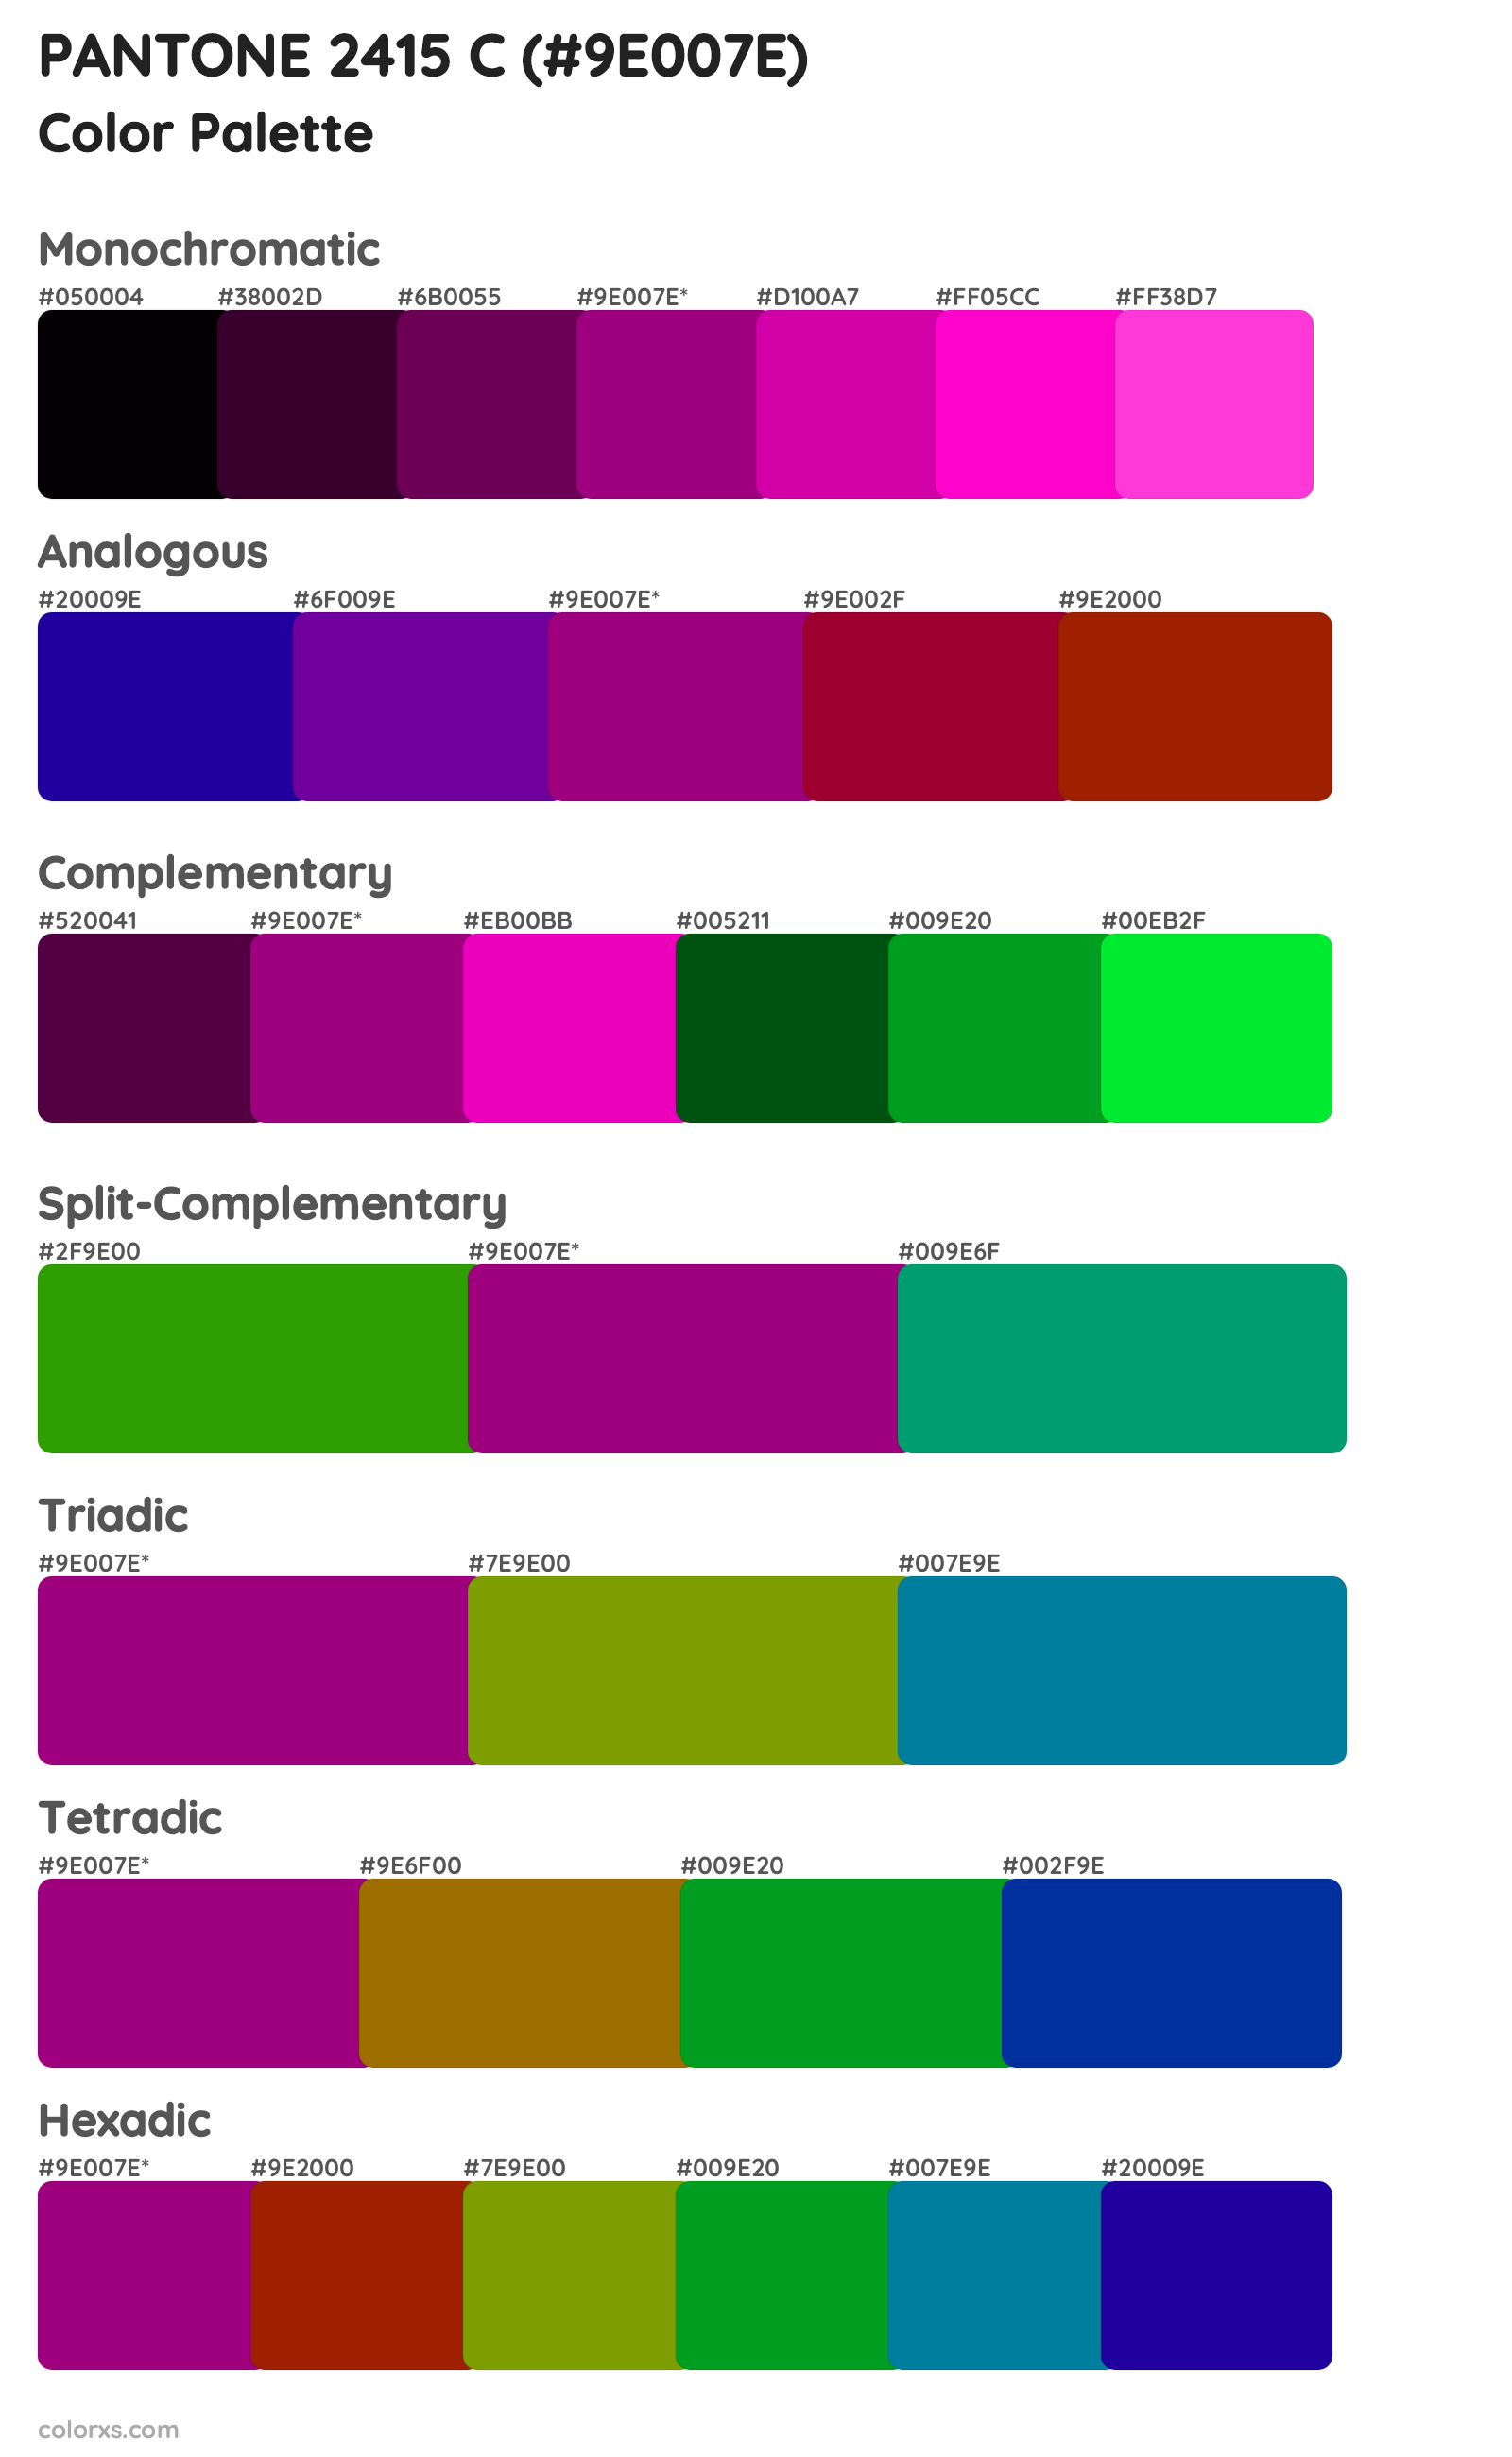 PANTONE 2415 C Color Scheme Palettes